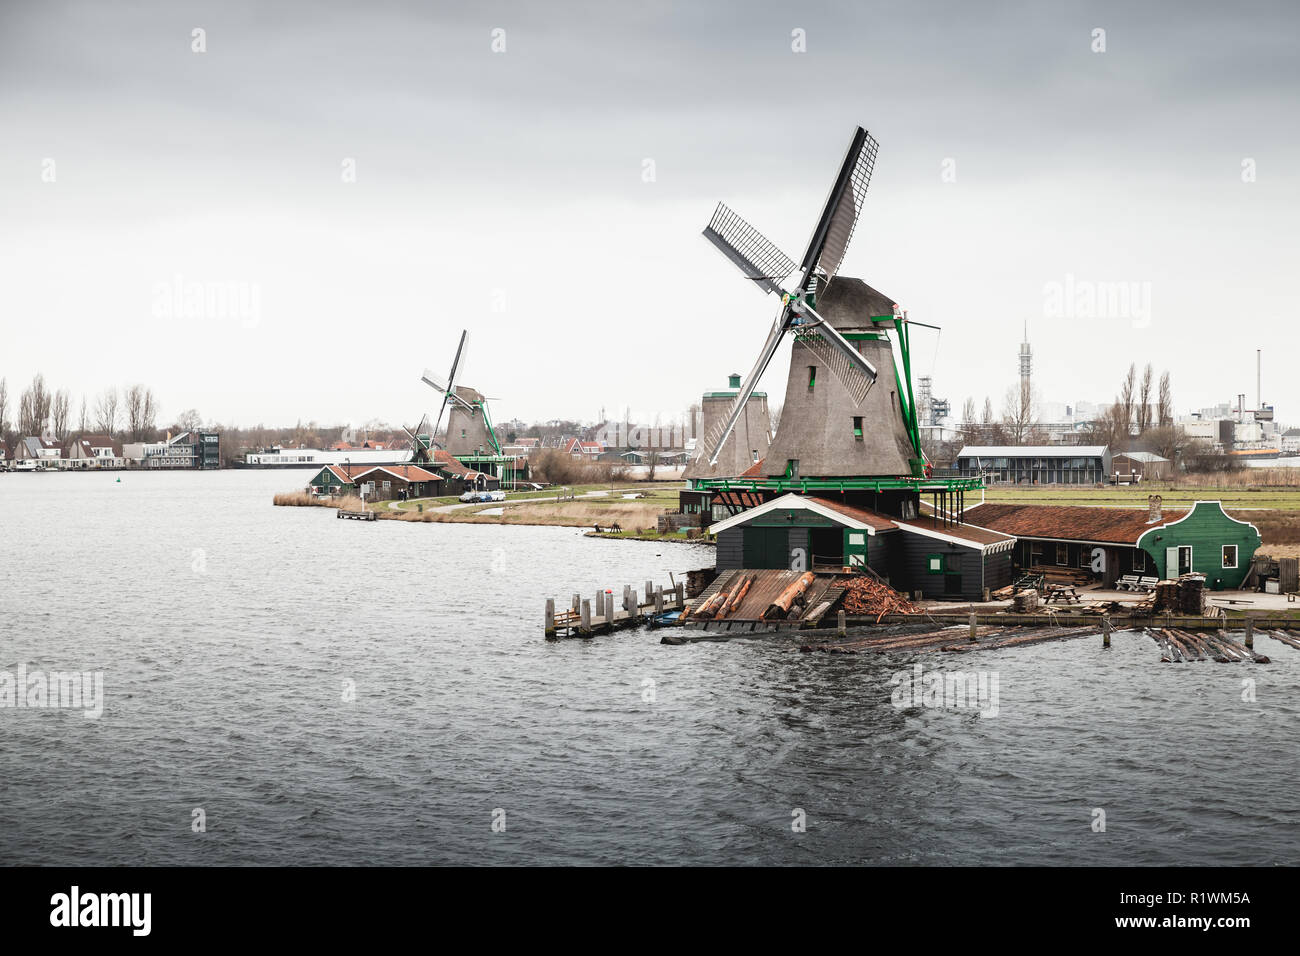 Windmühlen auf Fluss Zaan Küste. Zaanse Schans Stadt, Niederlande. Vorort von Amsterdam Stockfoto